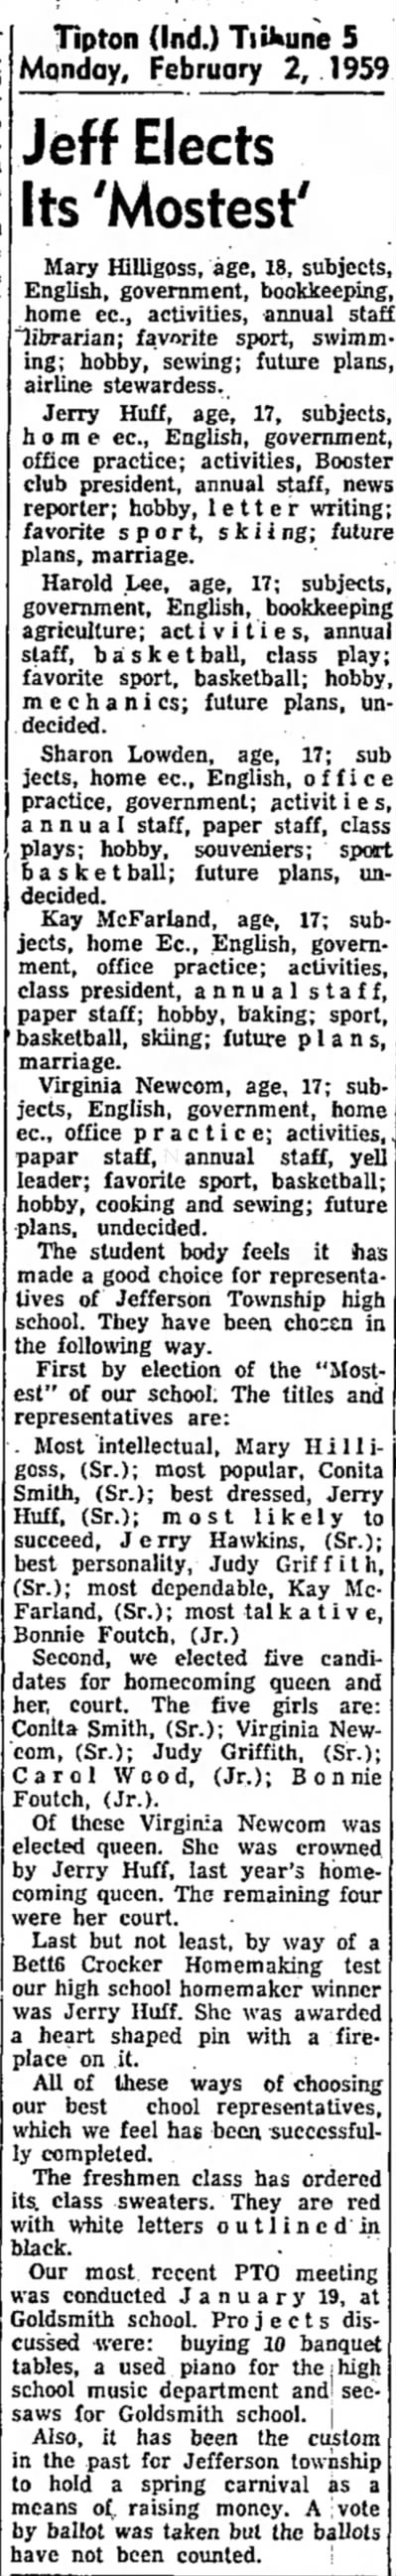 Tipton Tribune
Tipton, Indiana
2 February 1959
Page 5